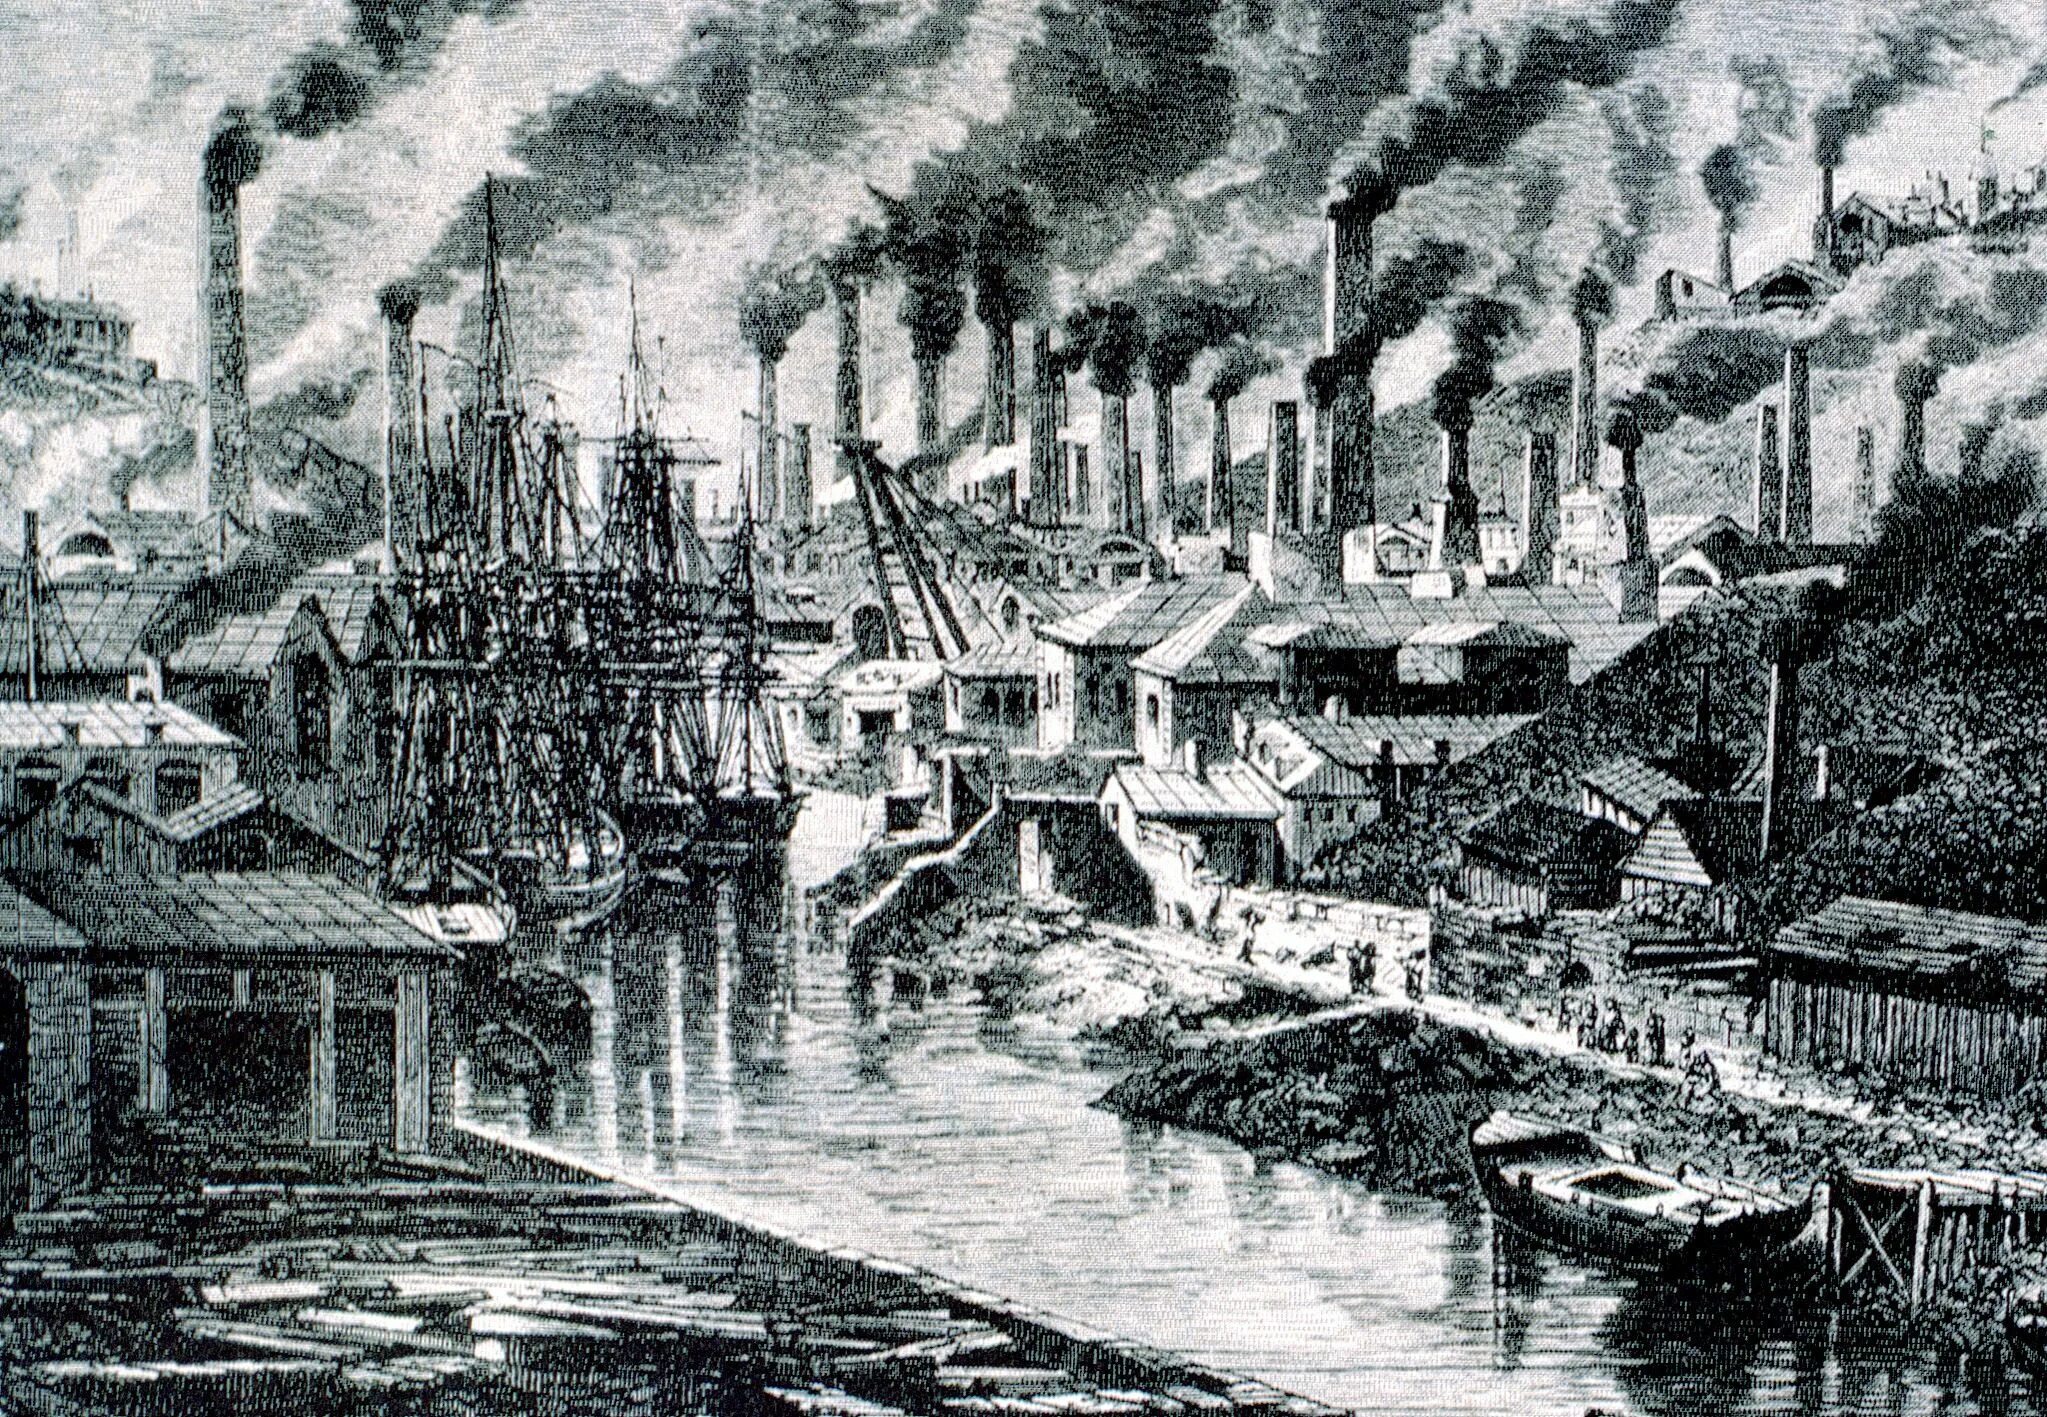 Industrial society. Промышленный переворот в Англии 18 век. Англия 18 век Индустриальная революция. Промышленная революция в Англии в 18 веке. Индустриальное общество США 19 век.